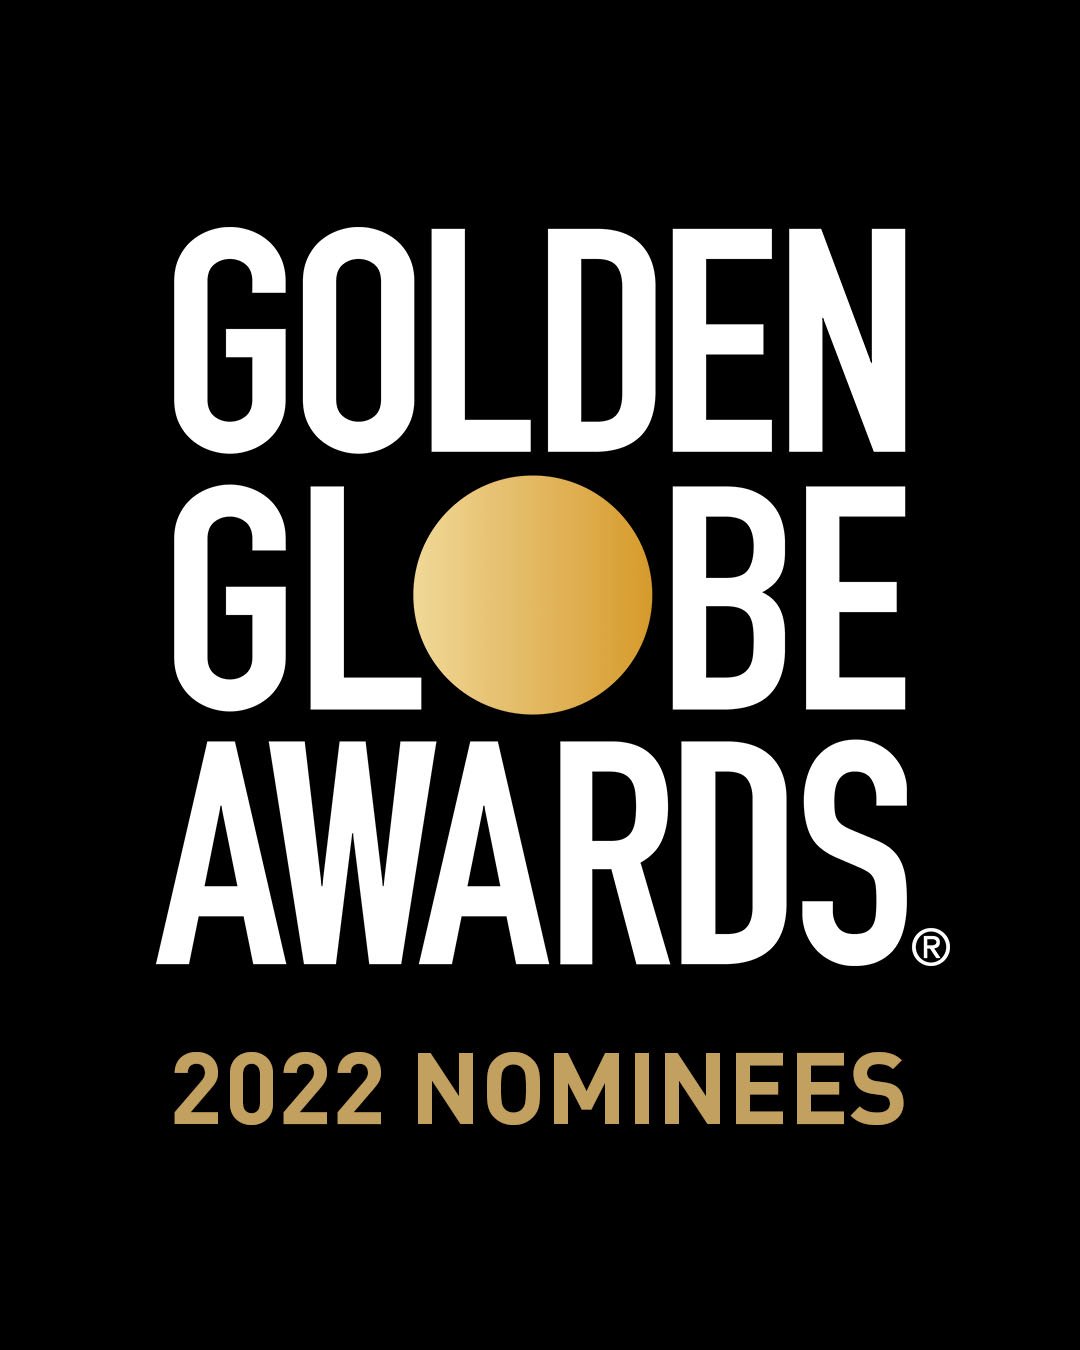 Nominations-IG PostsTitle Slide.jpg